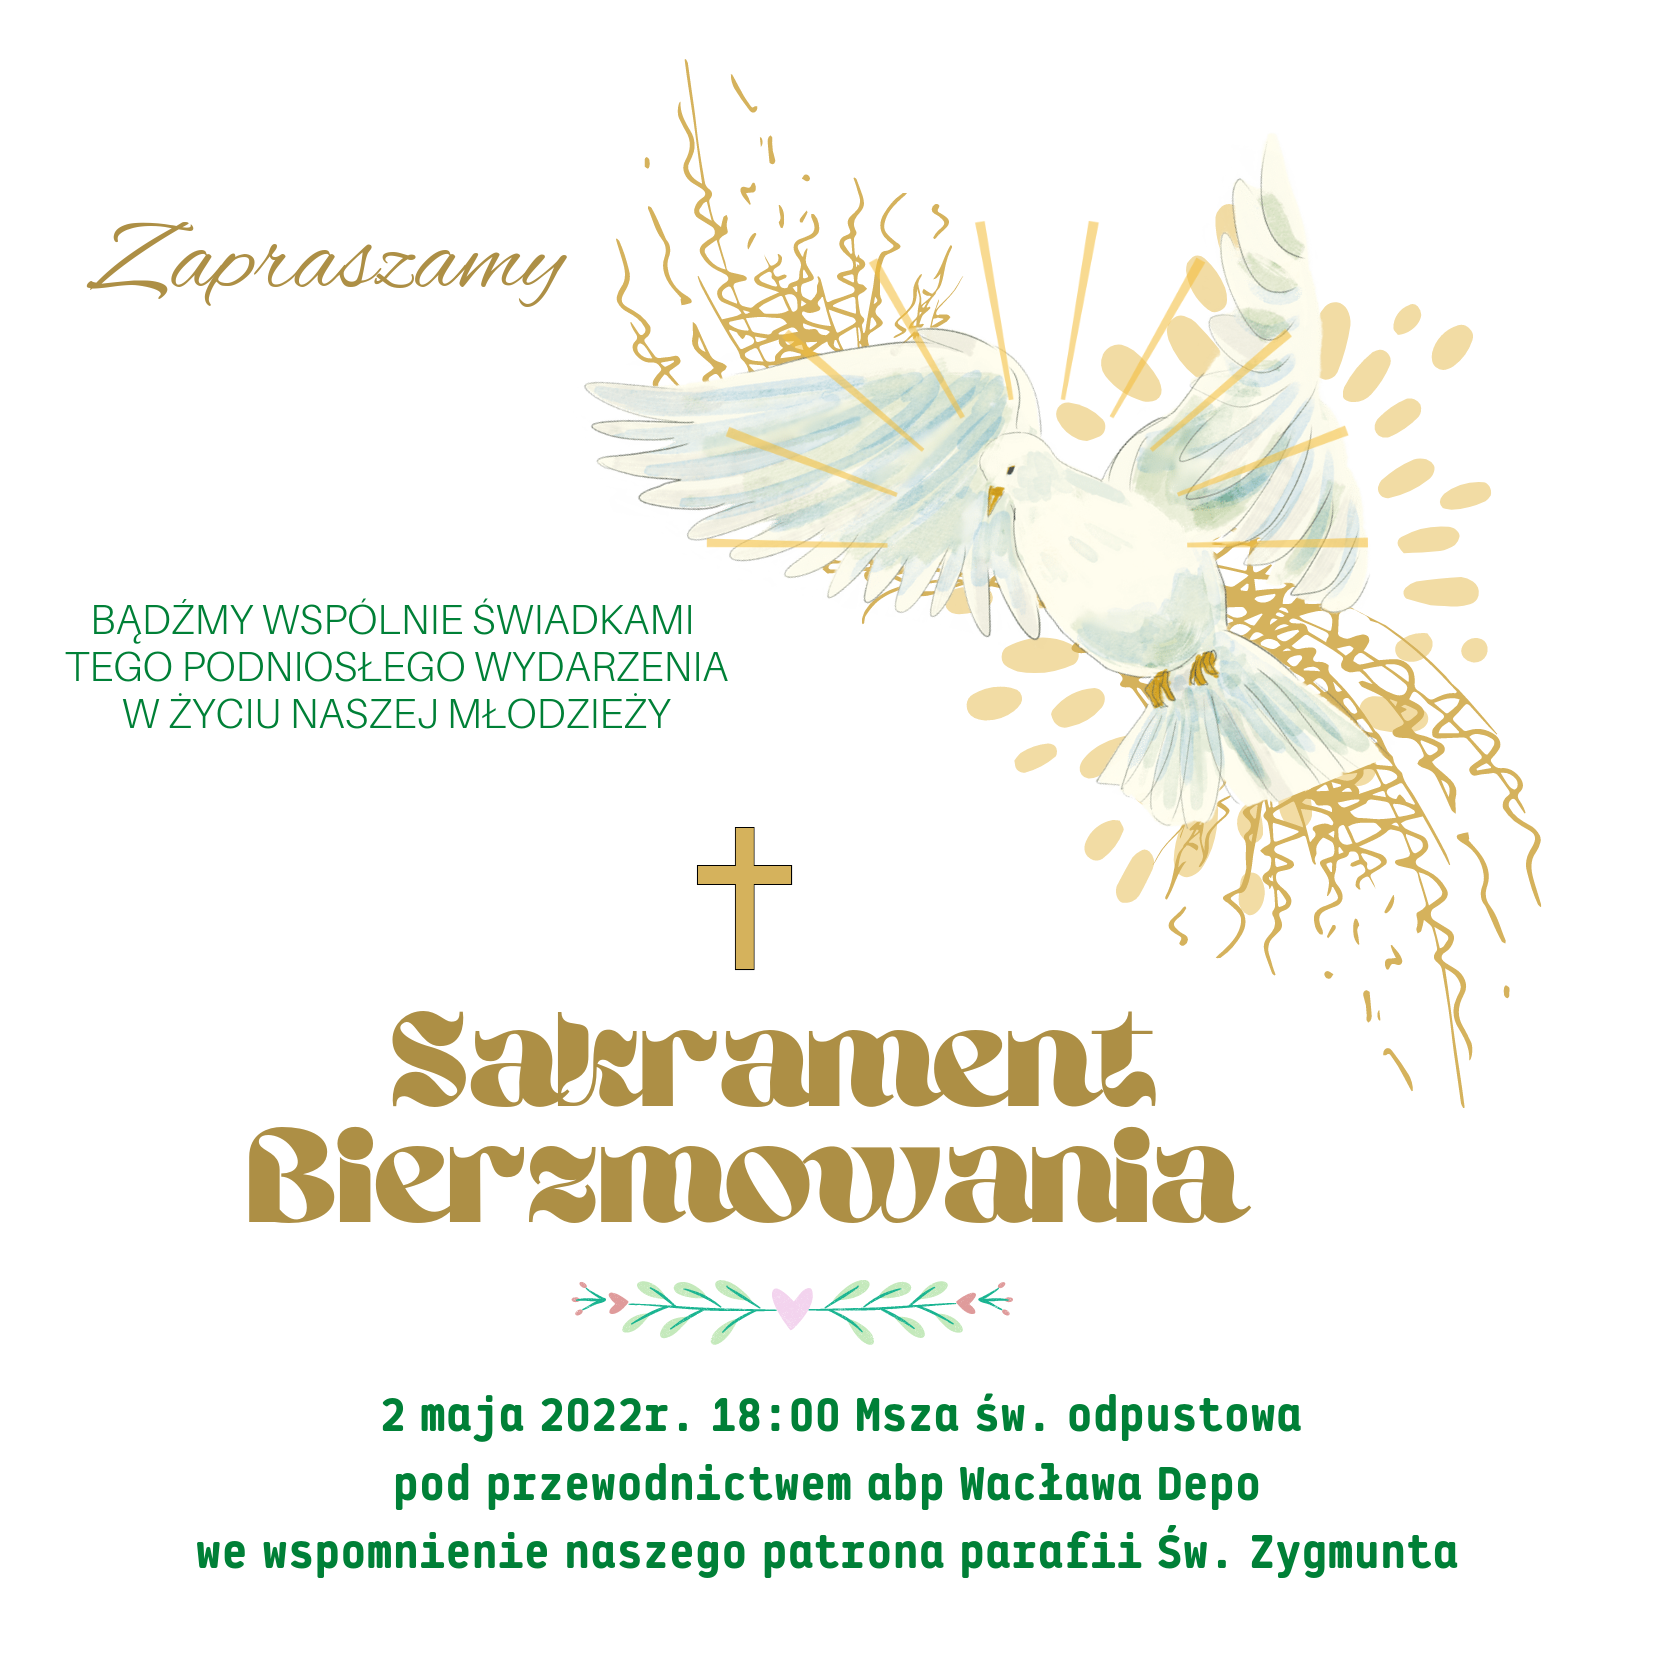 2 maja 2022 godzina 18:00 msza święta odpustowa pod przewodnictwem abpa Wacława Depo